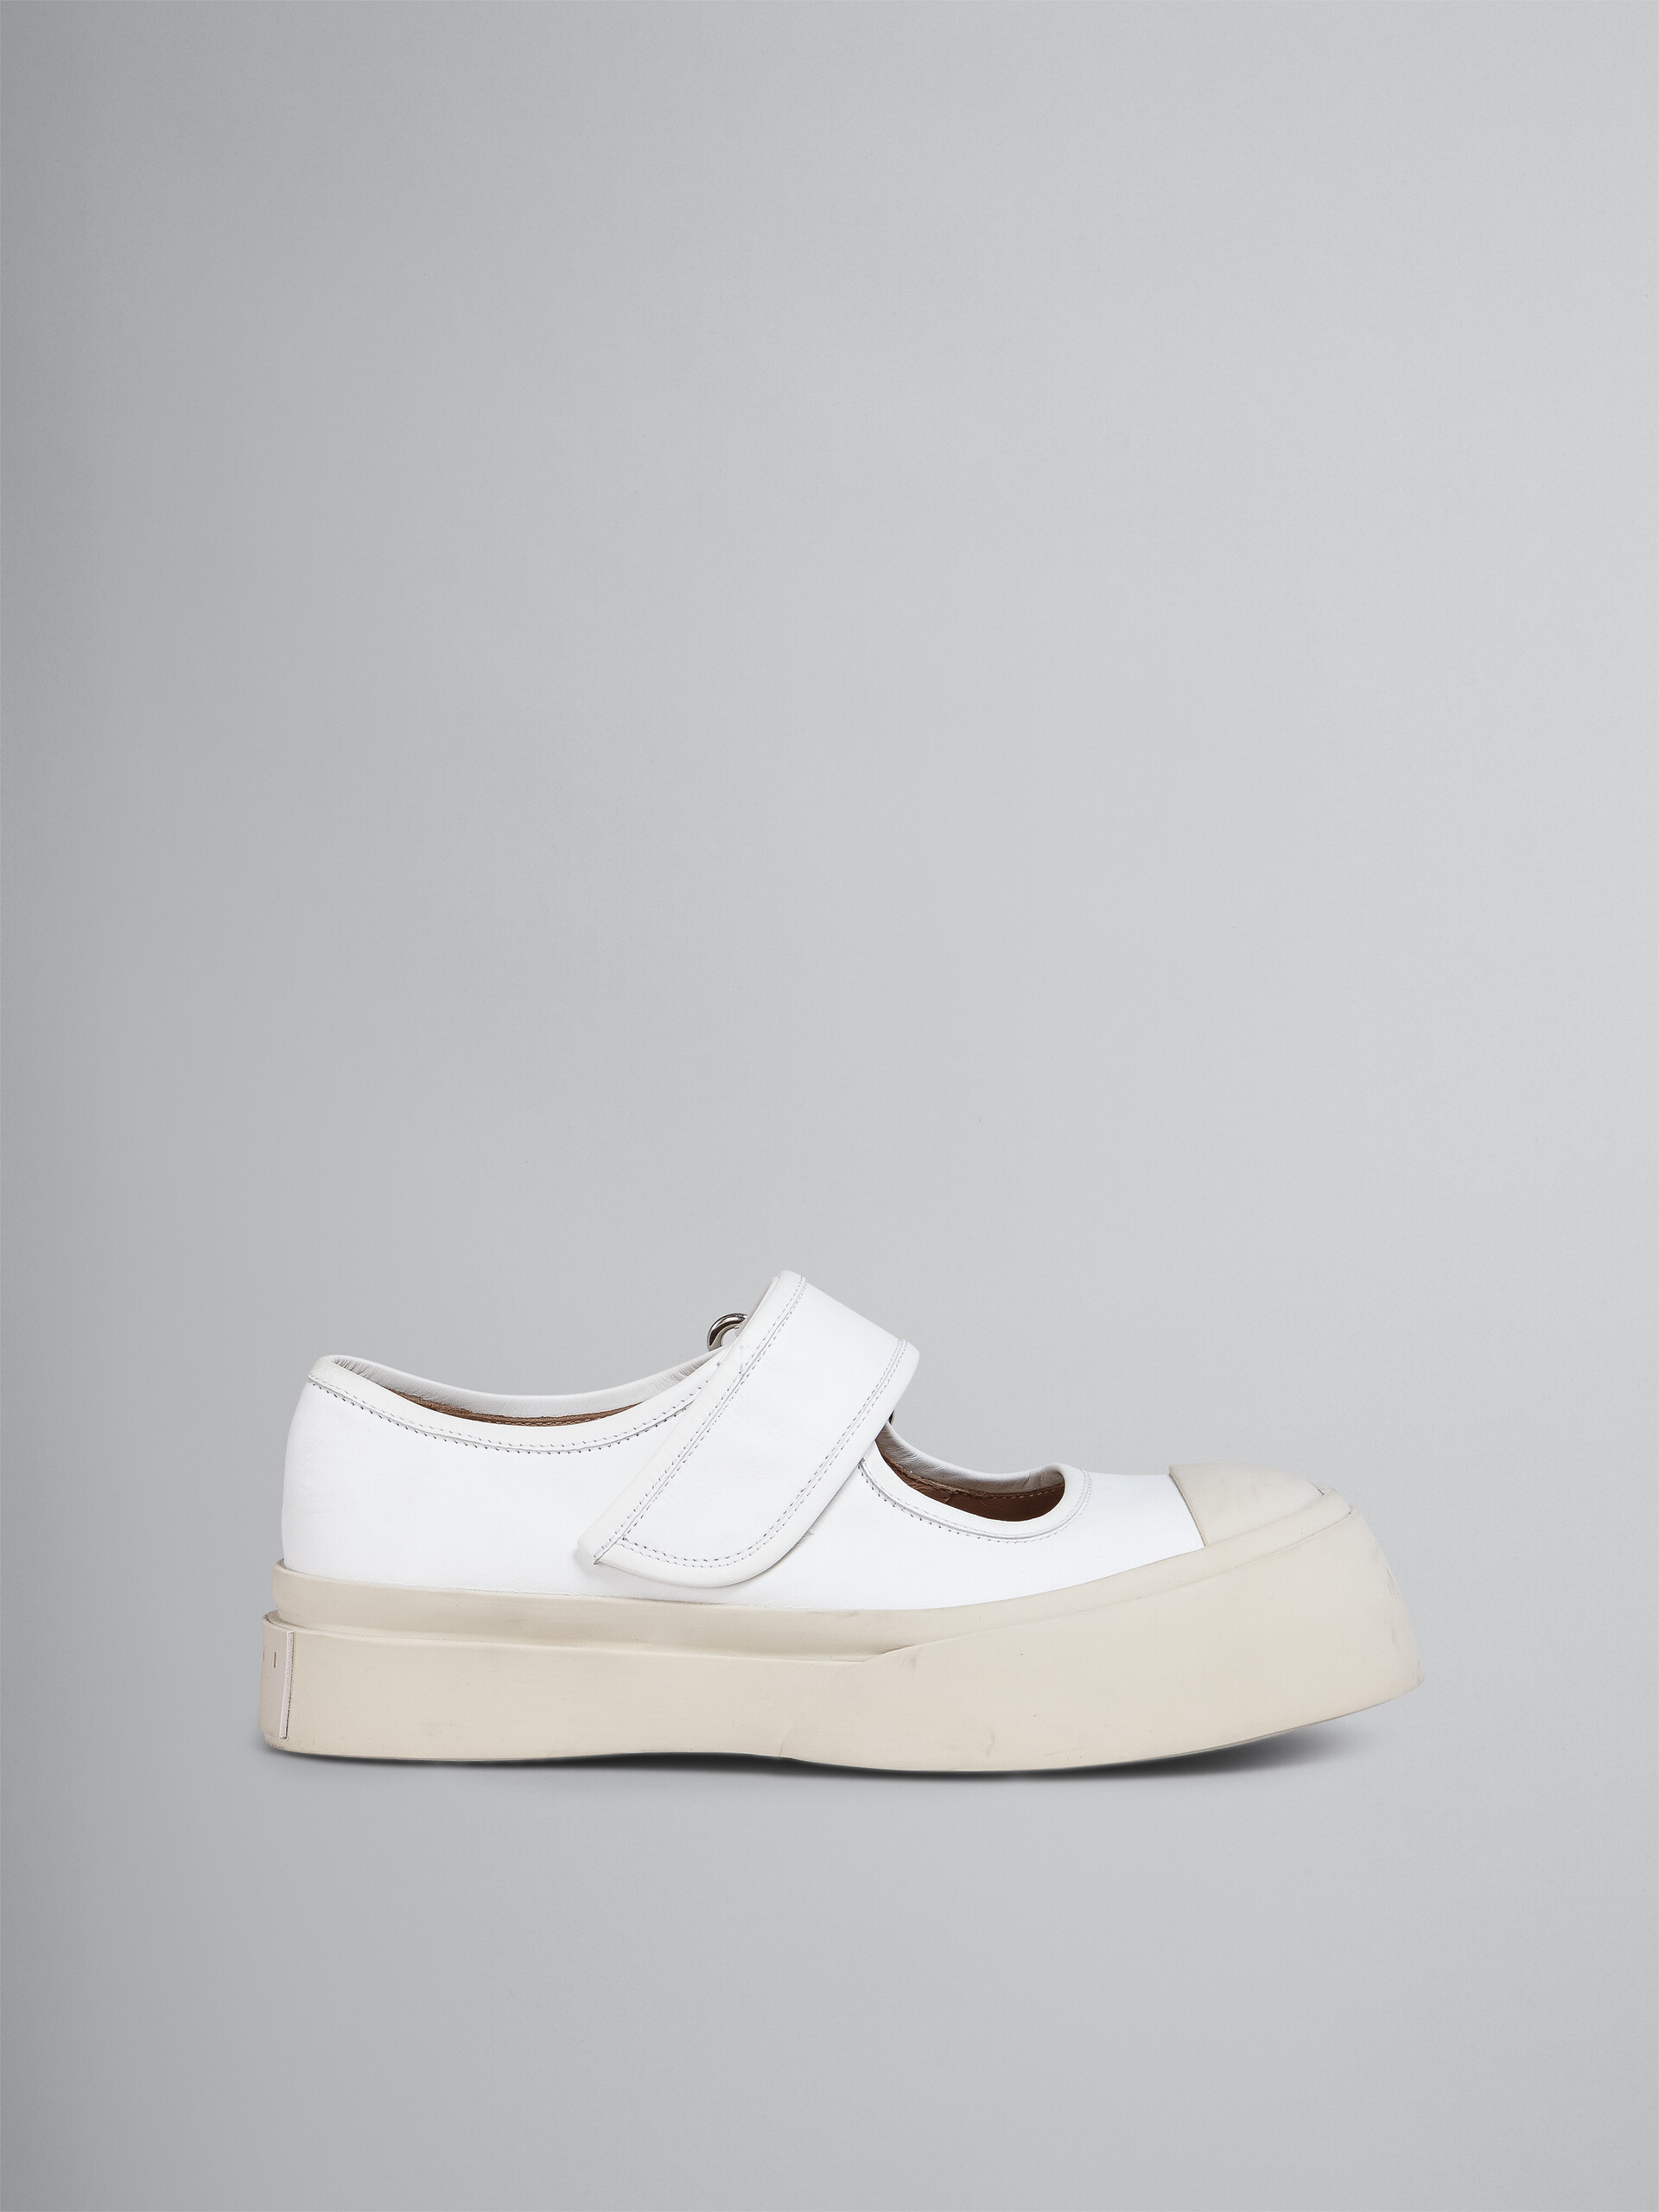 Sneakers Mary Jane en cuir blanc - Sneakers - Image 1